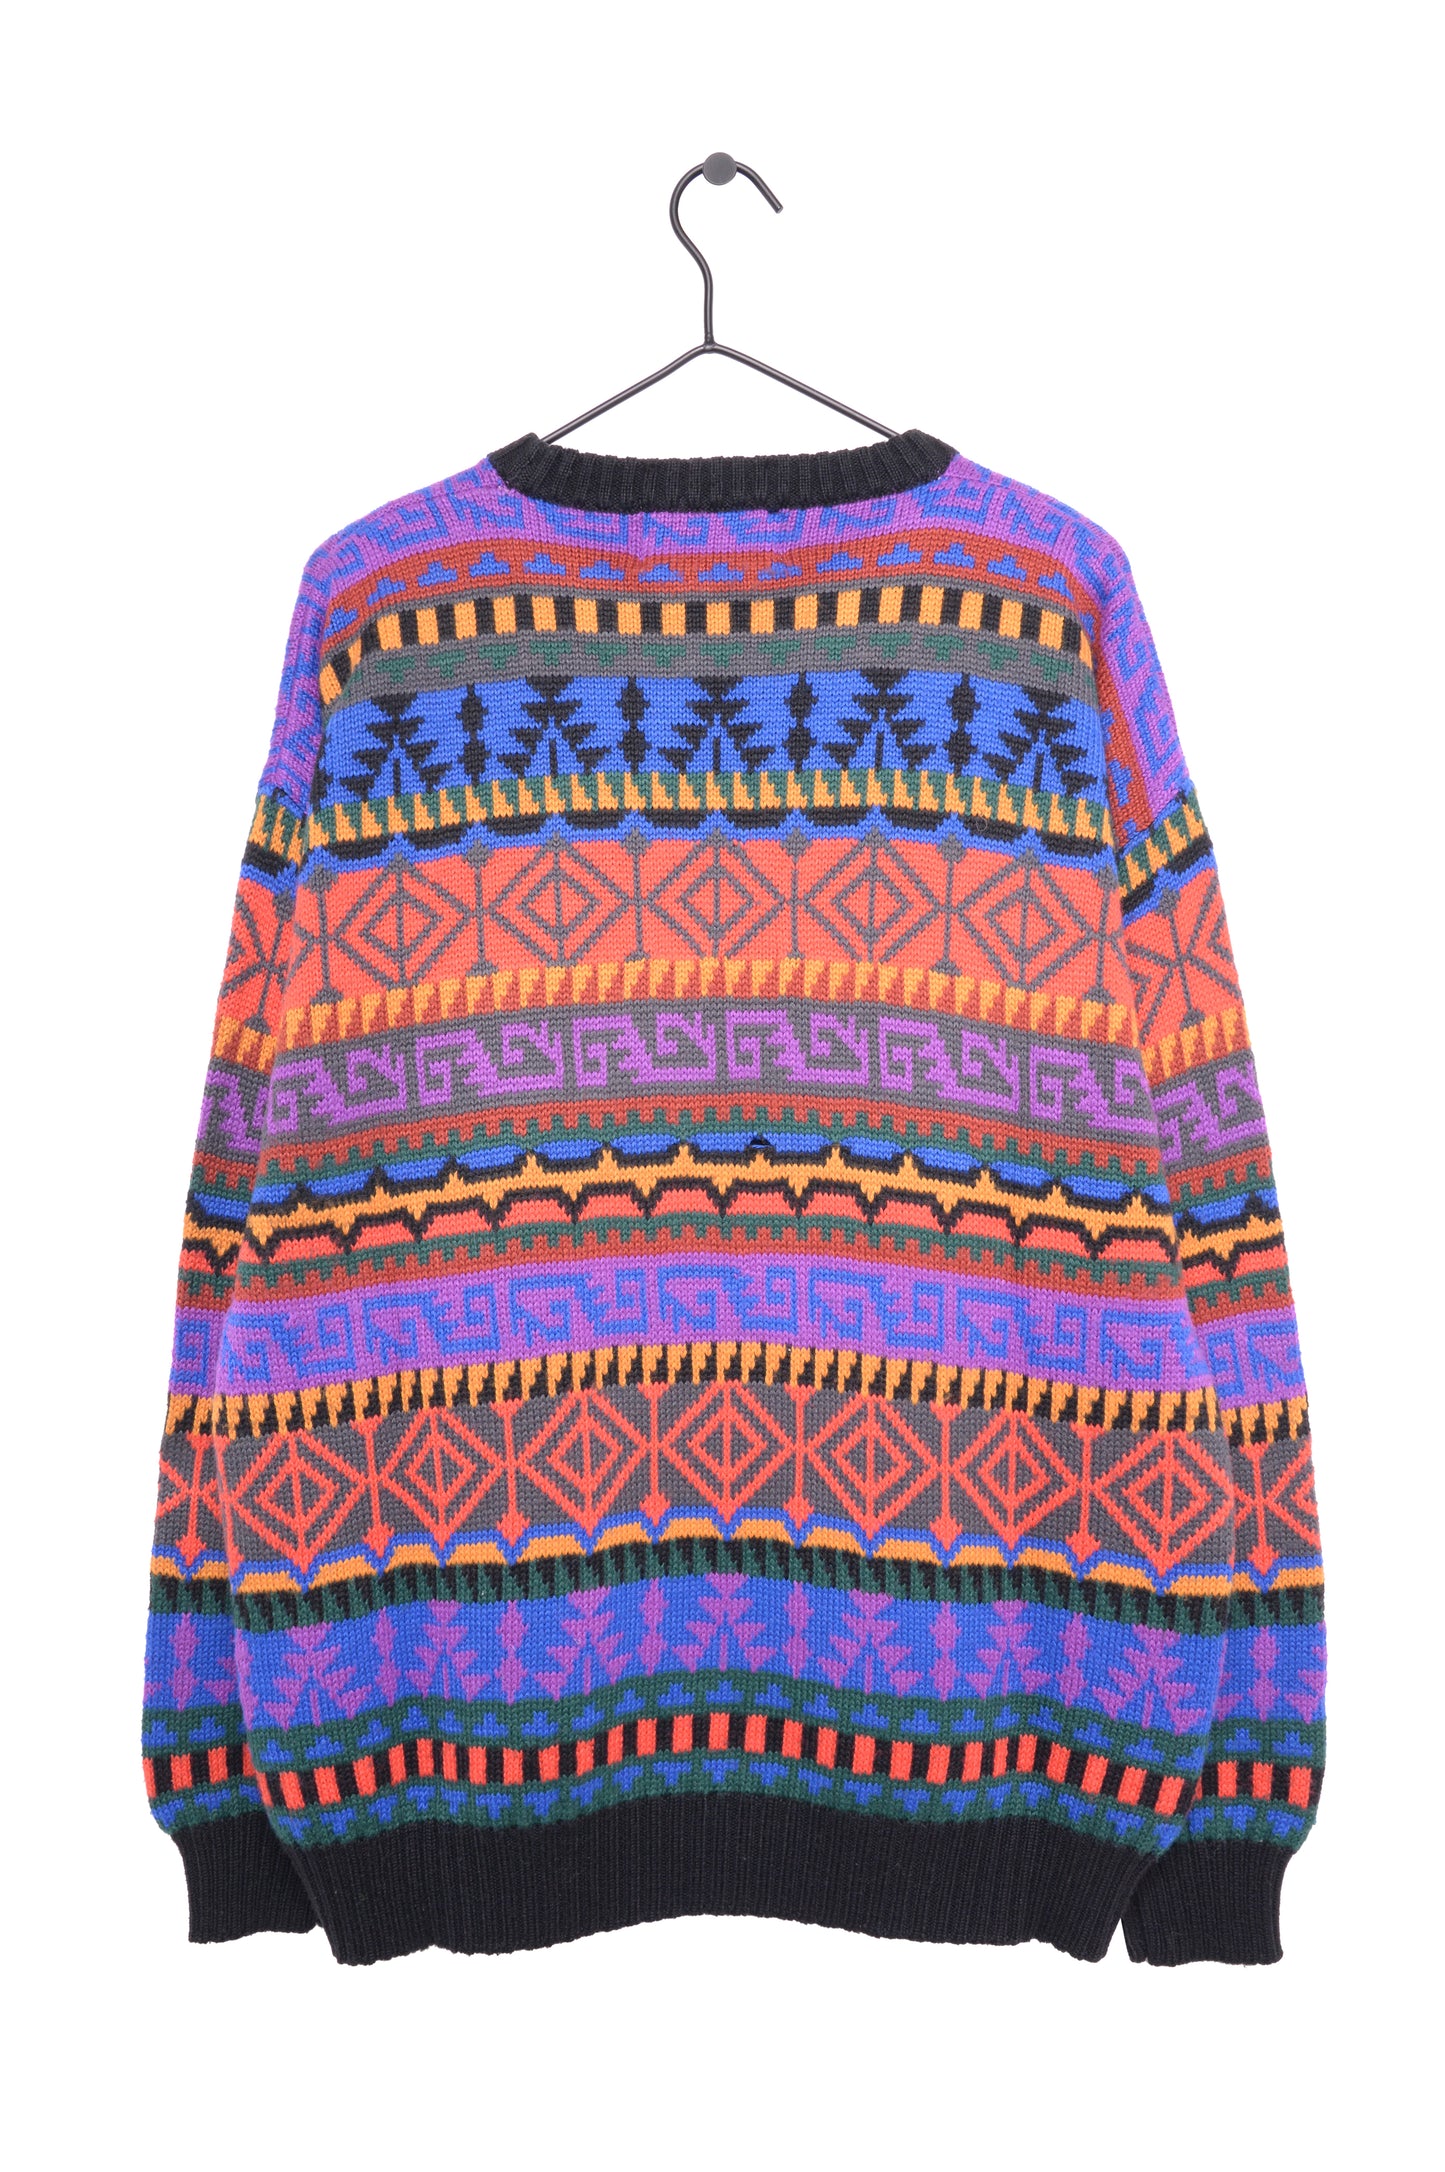 1980s Geometric Wool Sweater